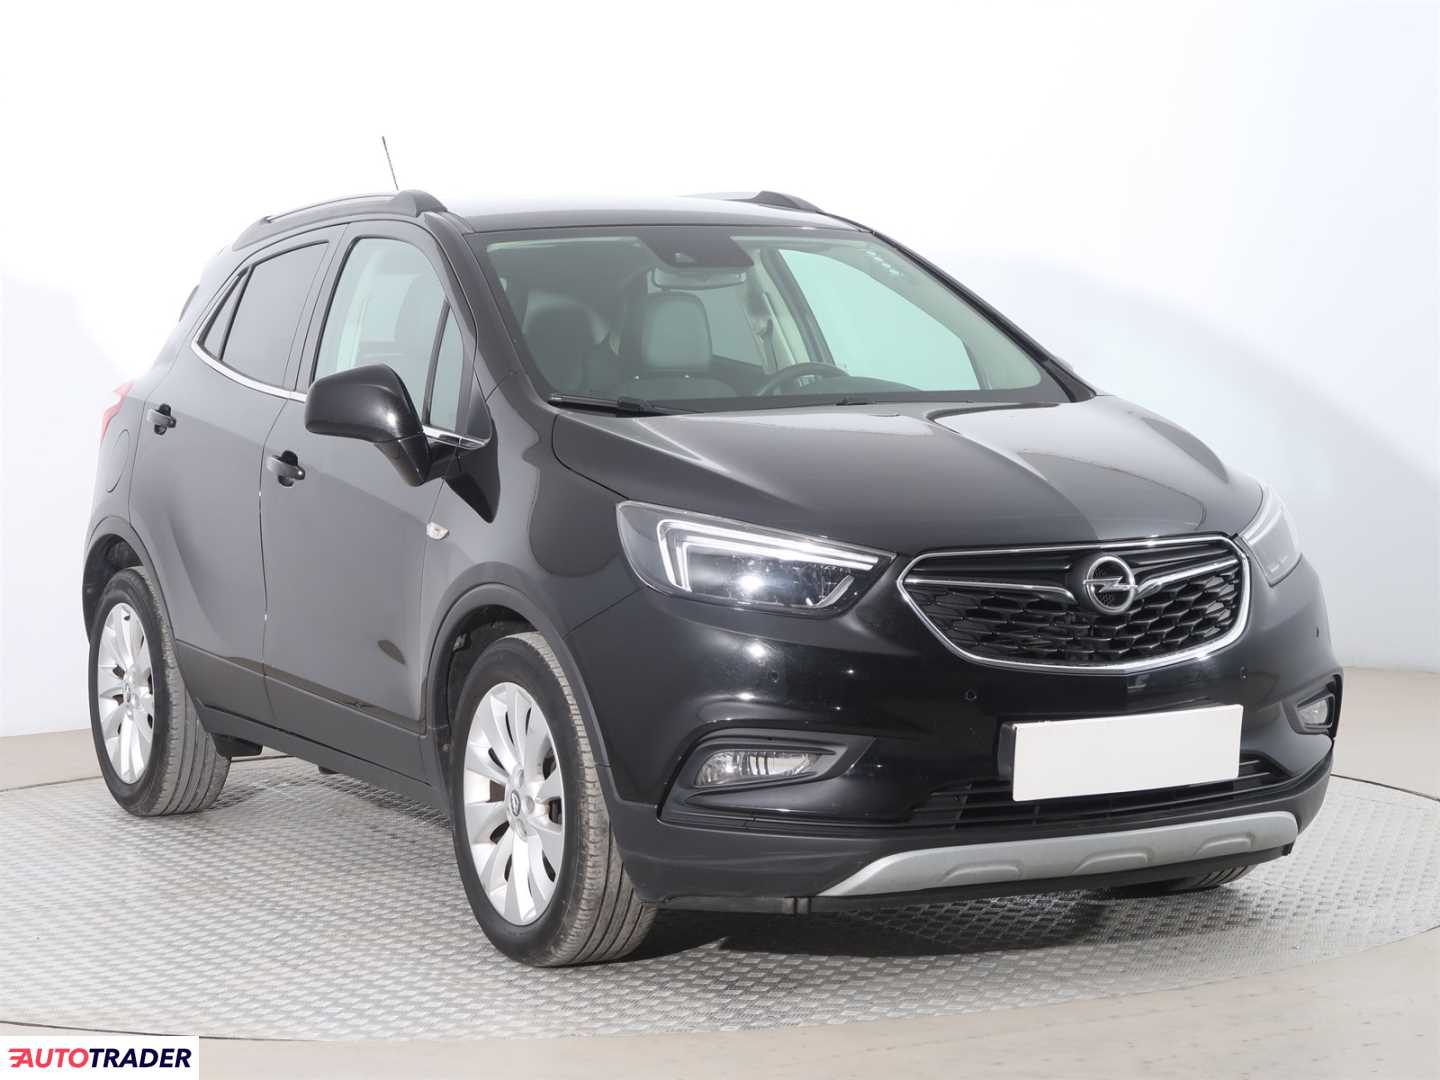 Opel Mokka 2016 1.4 138 KM